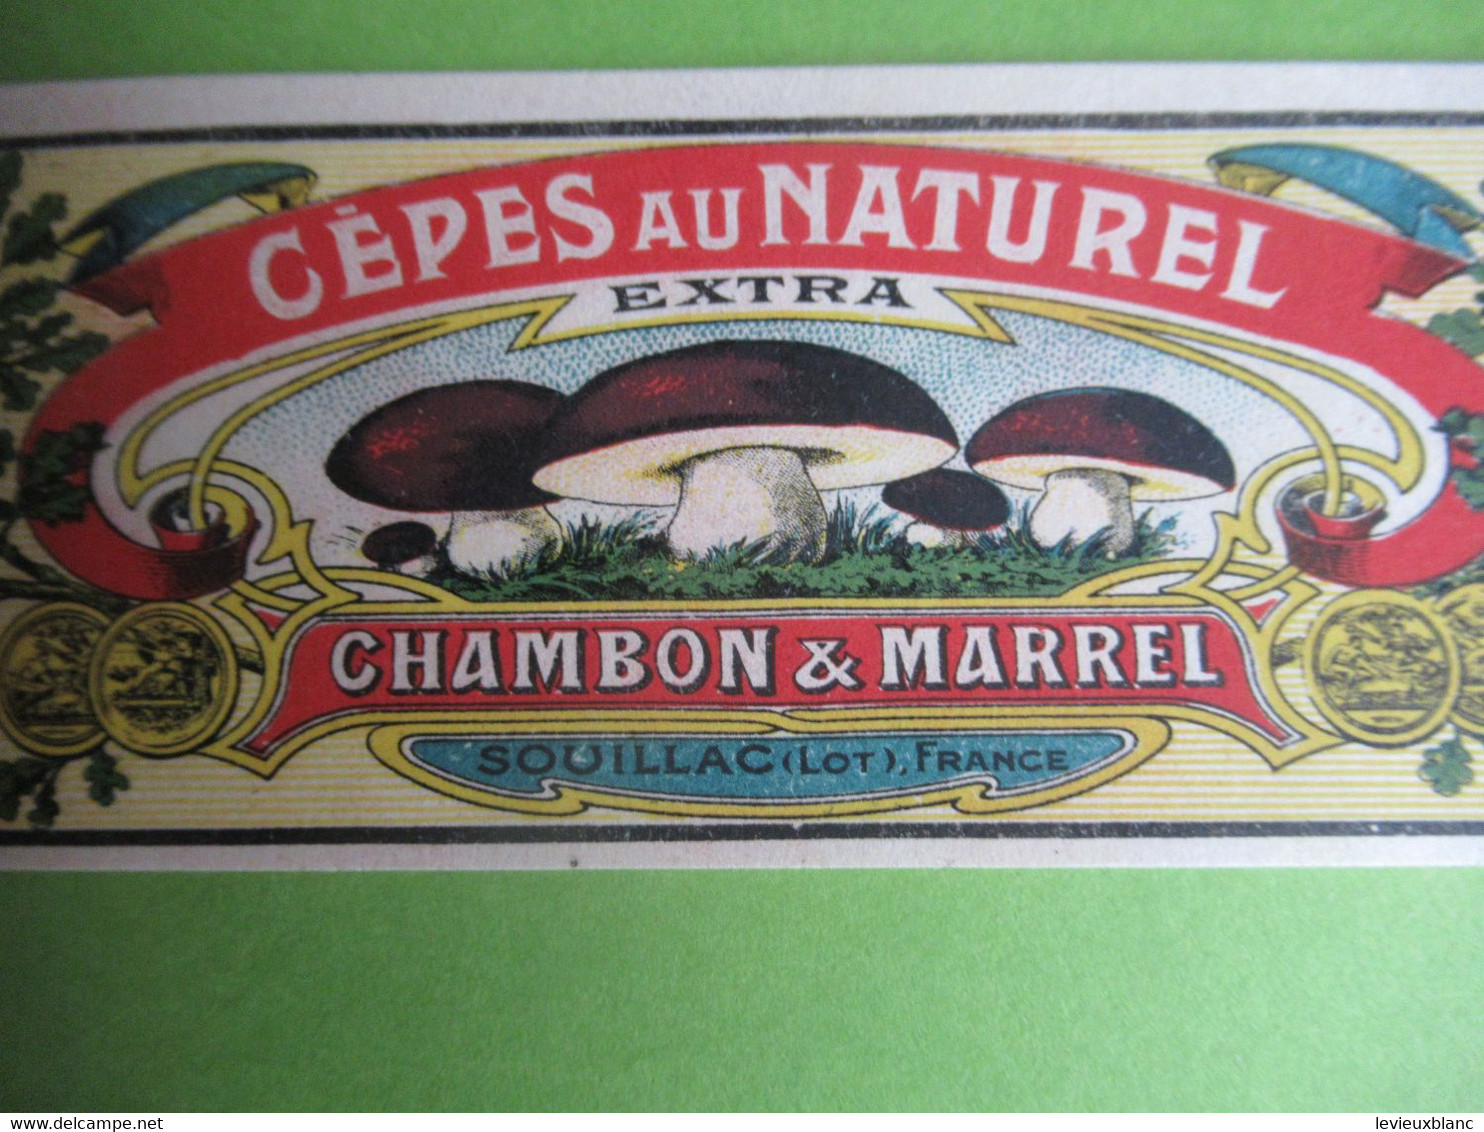 Etiquette Conserve/Cèpes Au Naturel /CHAMBON & MARREL/SOUILLAC( Lot ) Production JII/Ronteix Périgueux Début XX  ETIQ186 - Frutta E Verdura